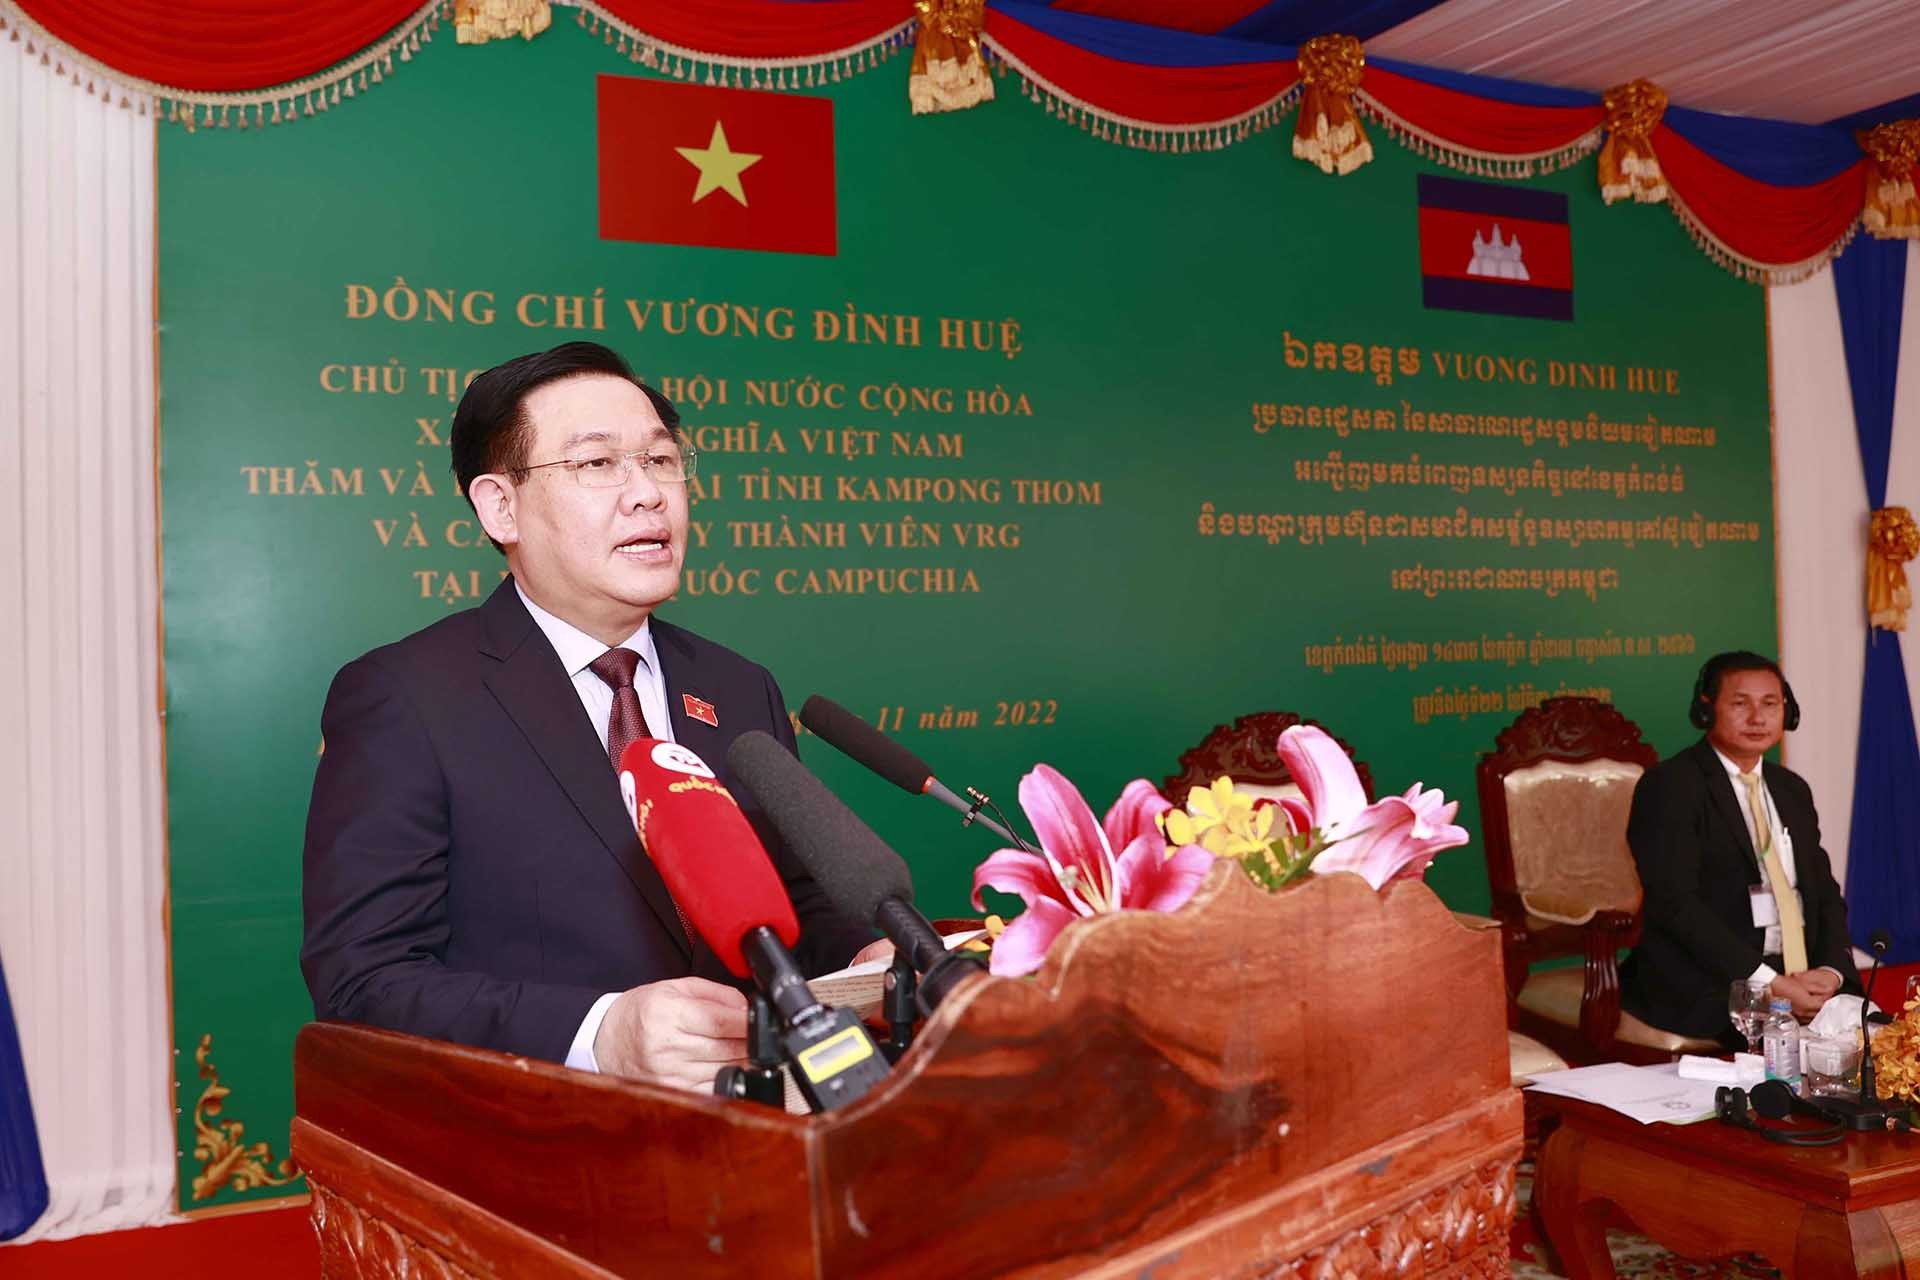 Chủ tịch Quốc hội Vương Đình Huệ nói chuyện với cán bộ, công nhân người Việt tại Cụm dự án cao su tỉnh Kampong Thom. (Nguồn: TTXVN)